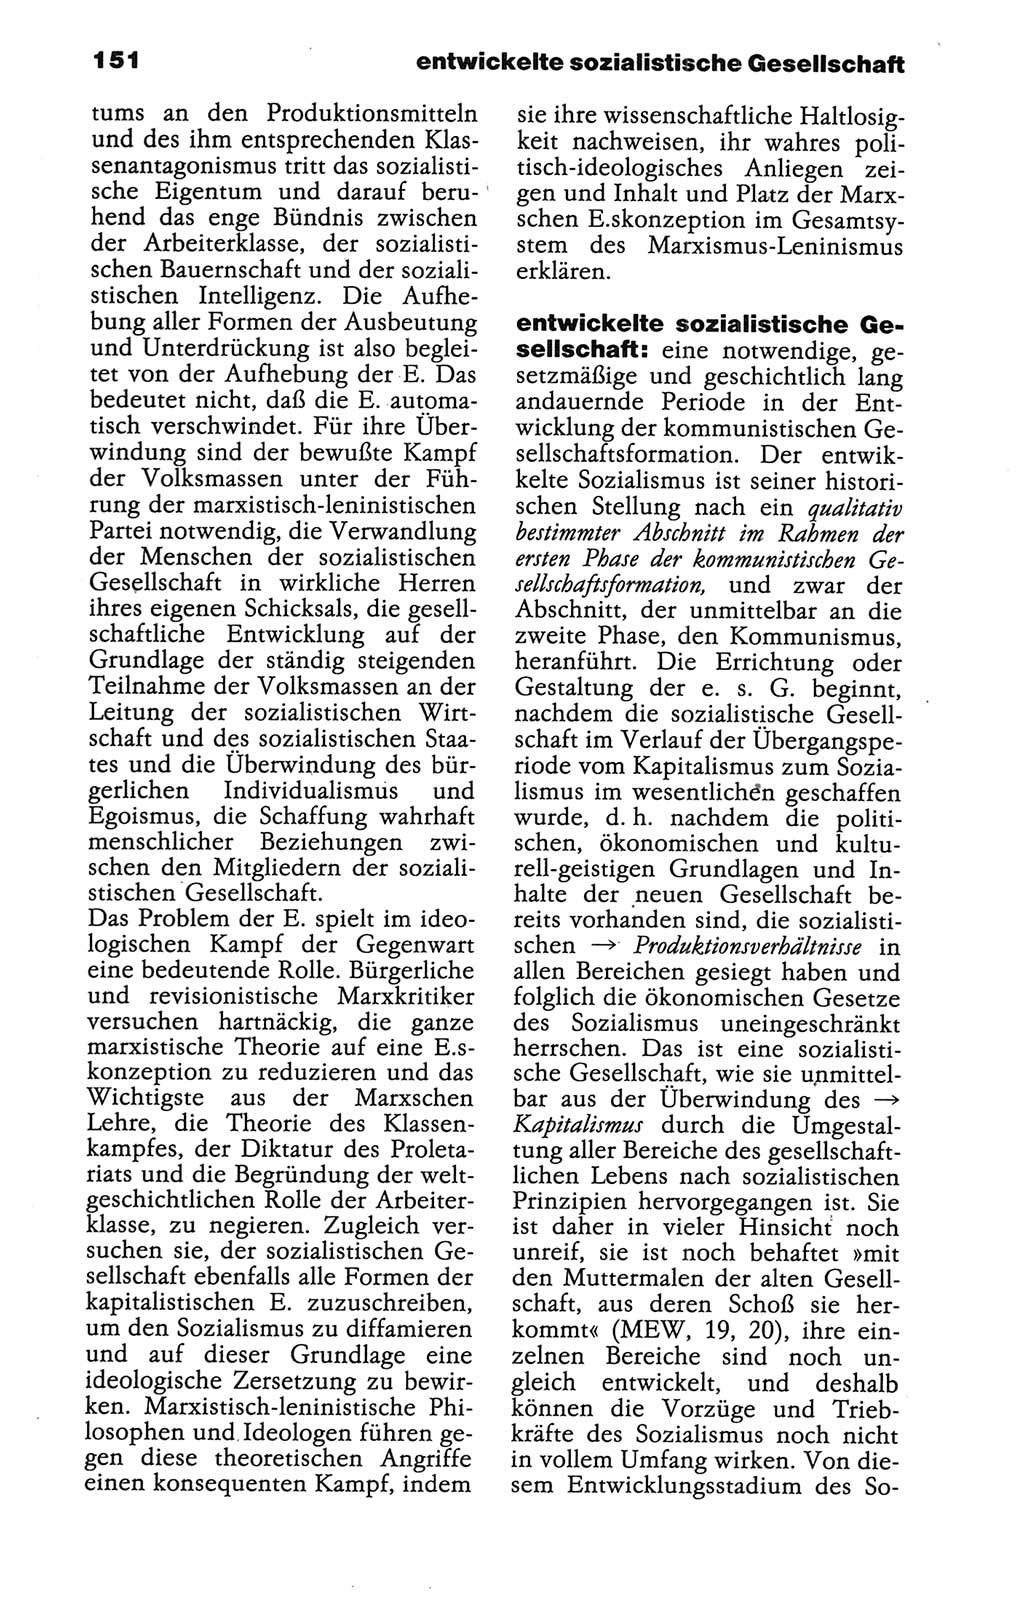 Wörterbuch der marxistisch-leninistischen Philosophie [Deutsche Demokratische Republik (DDR)] 1986, Seite 151 (Wb. ML Phil. DDR 1986, S. 151)